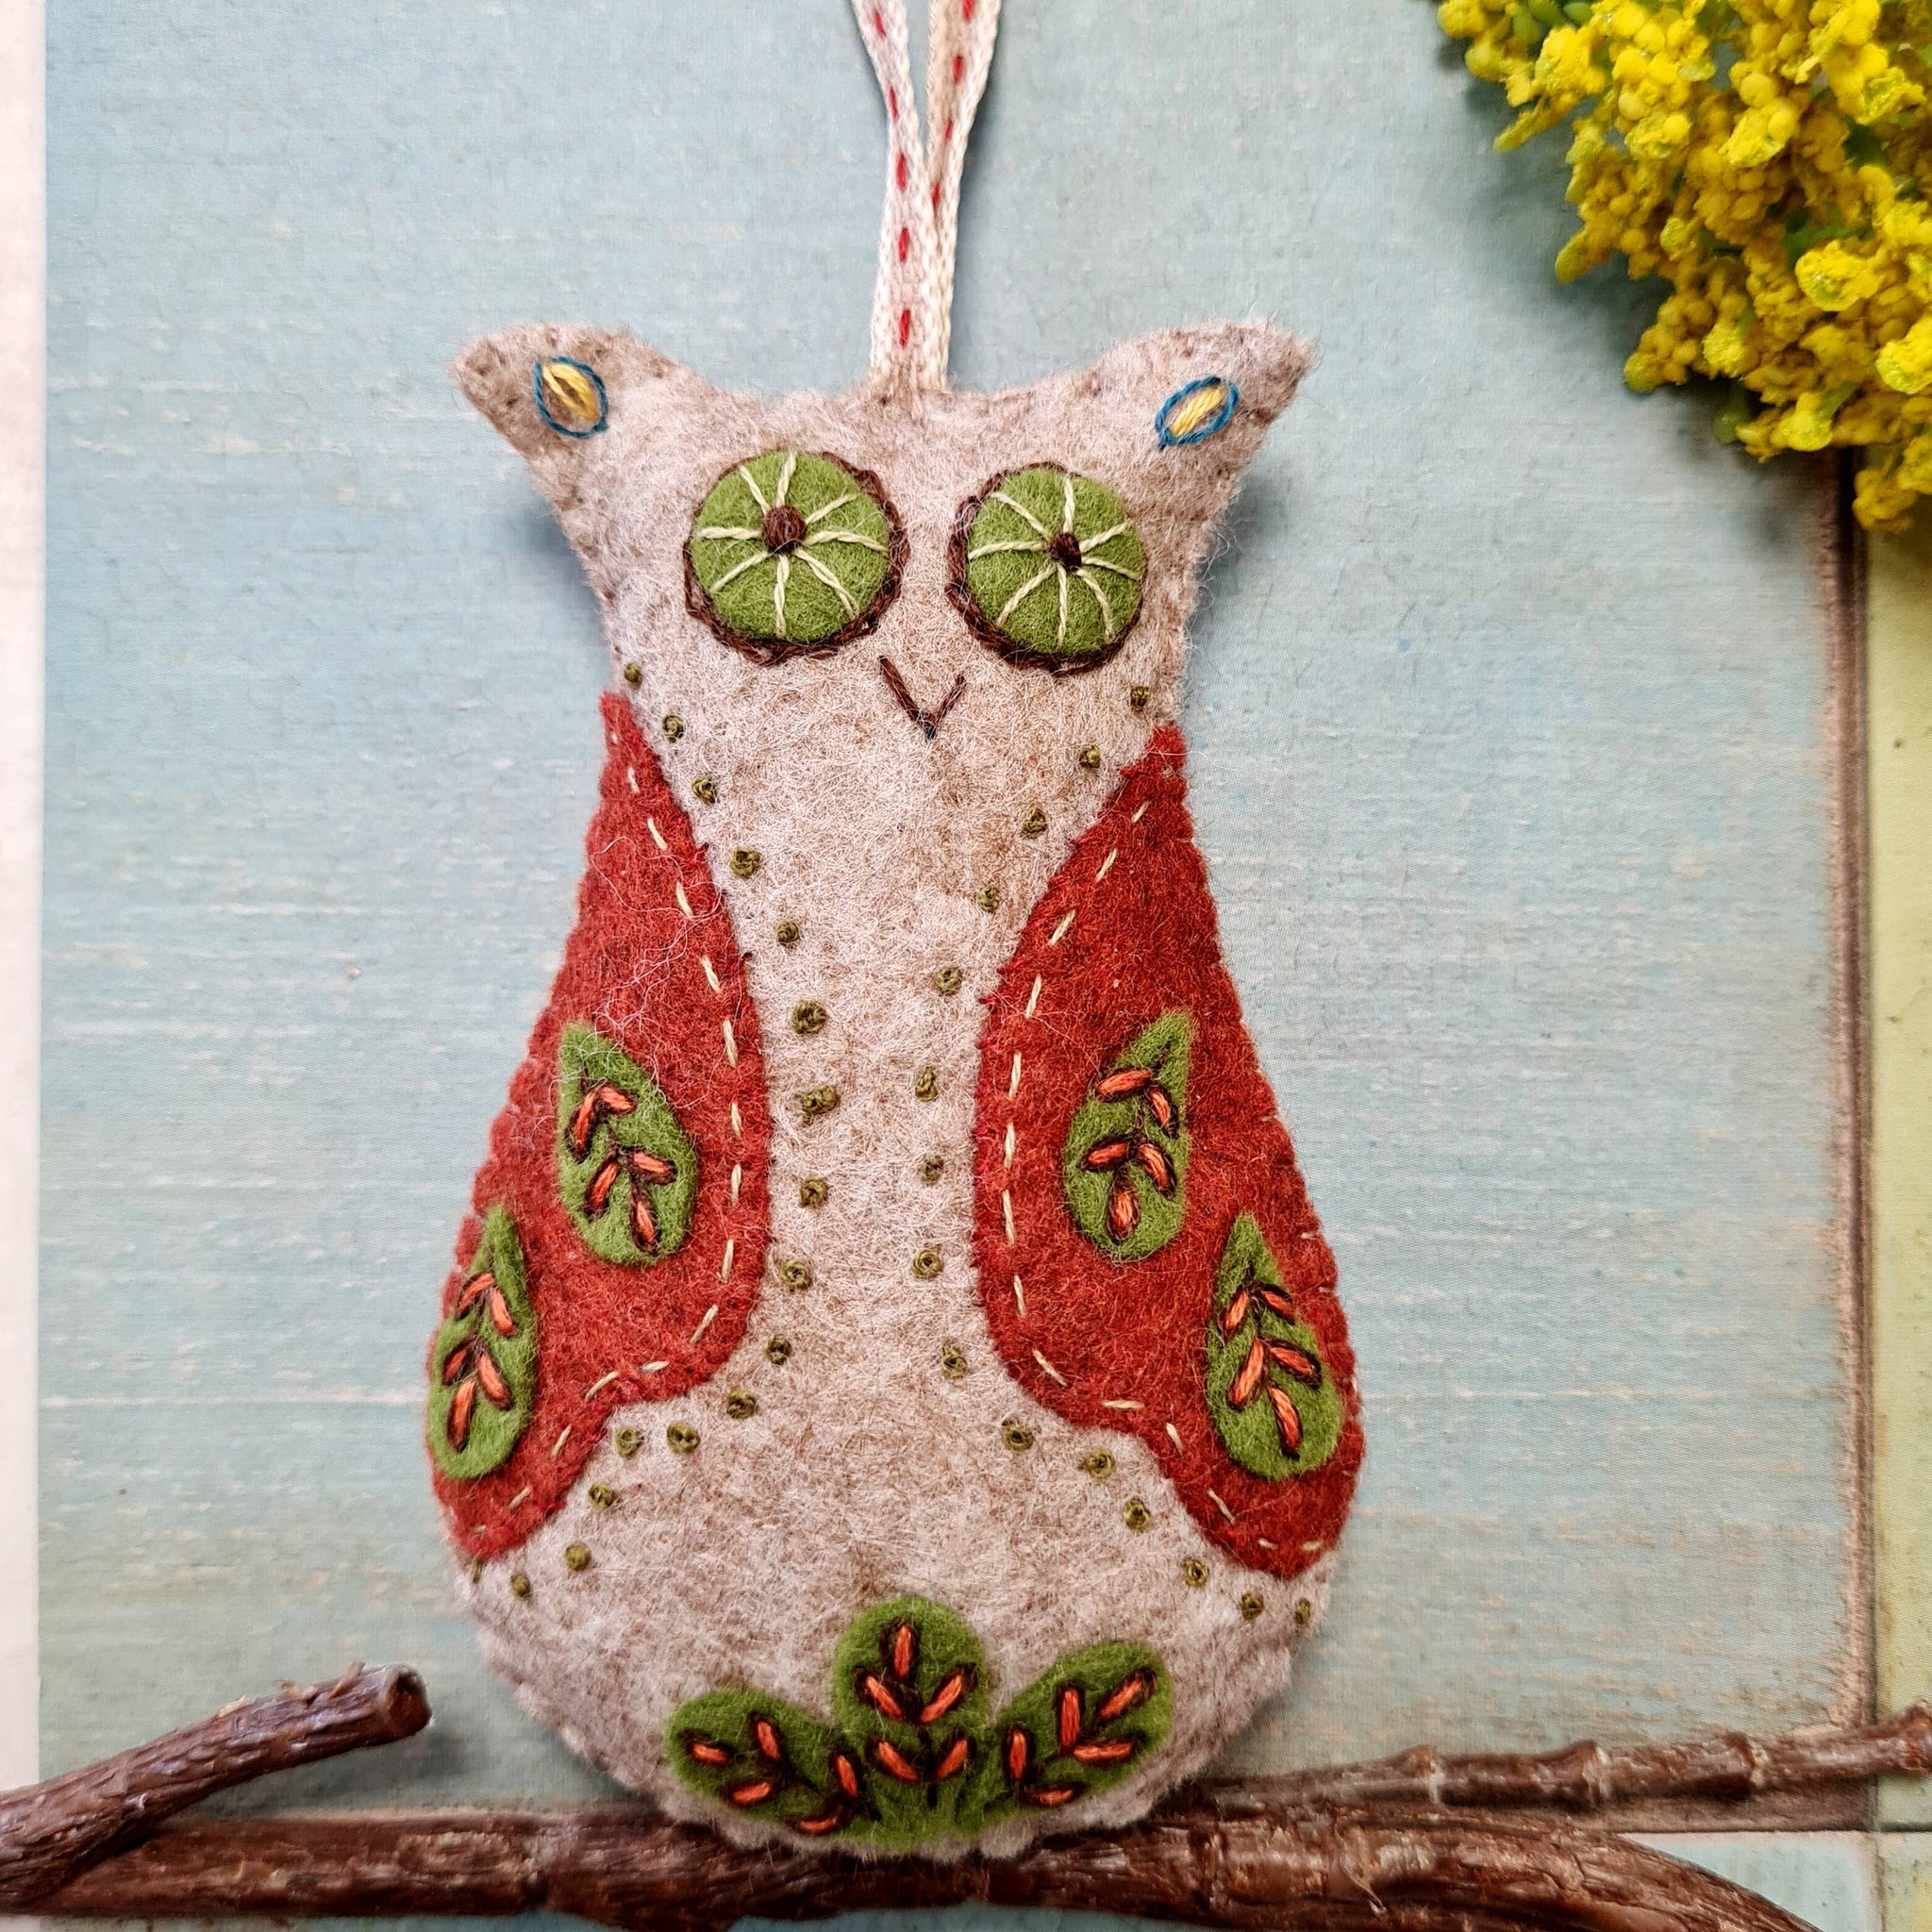 Folk Embroidered Owl Felt Craft Mini Kit